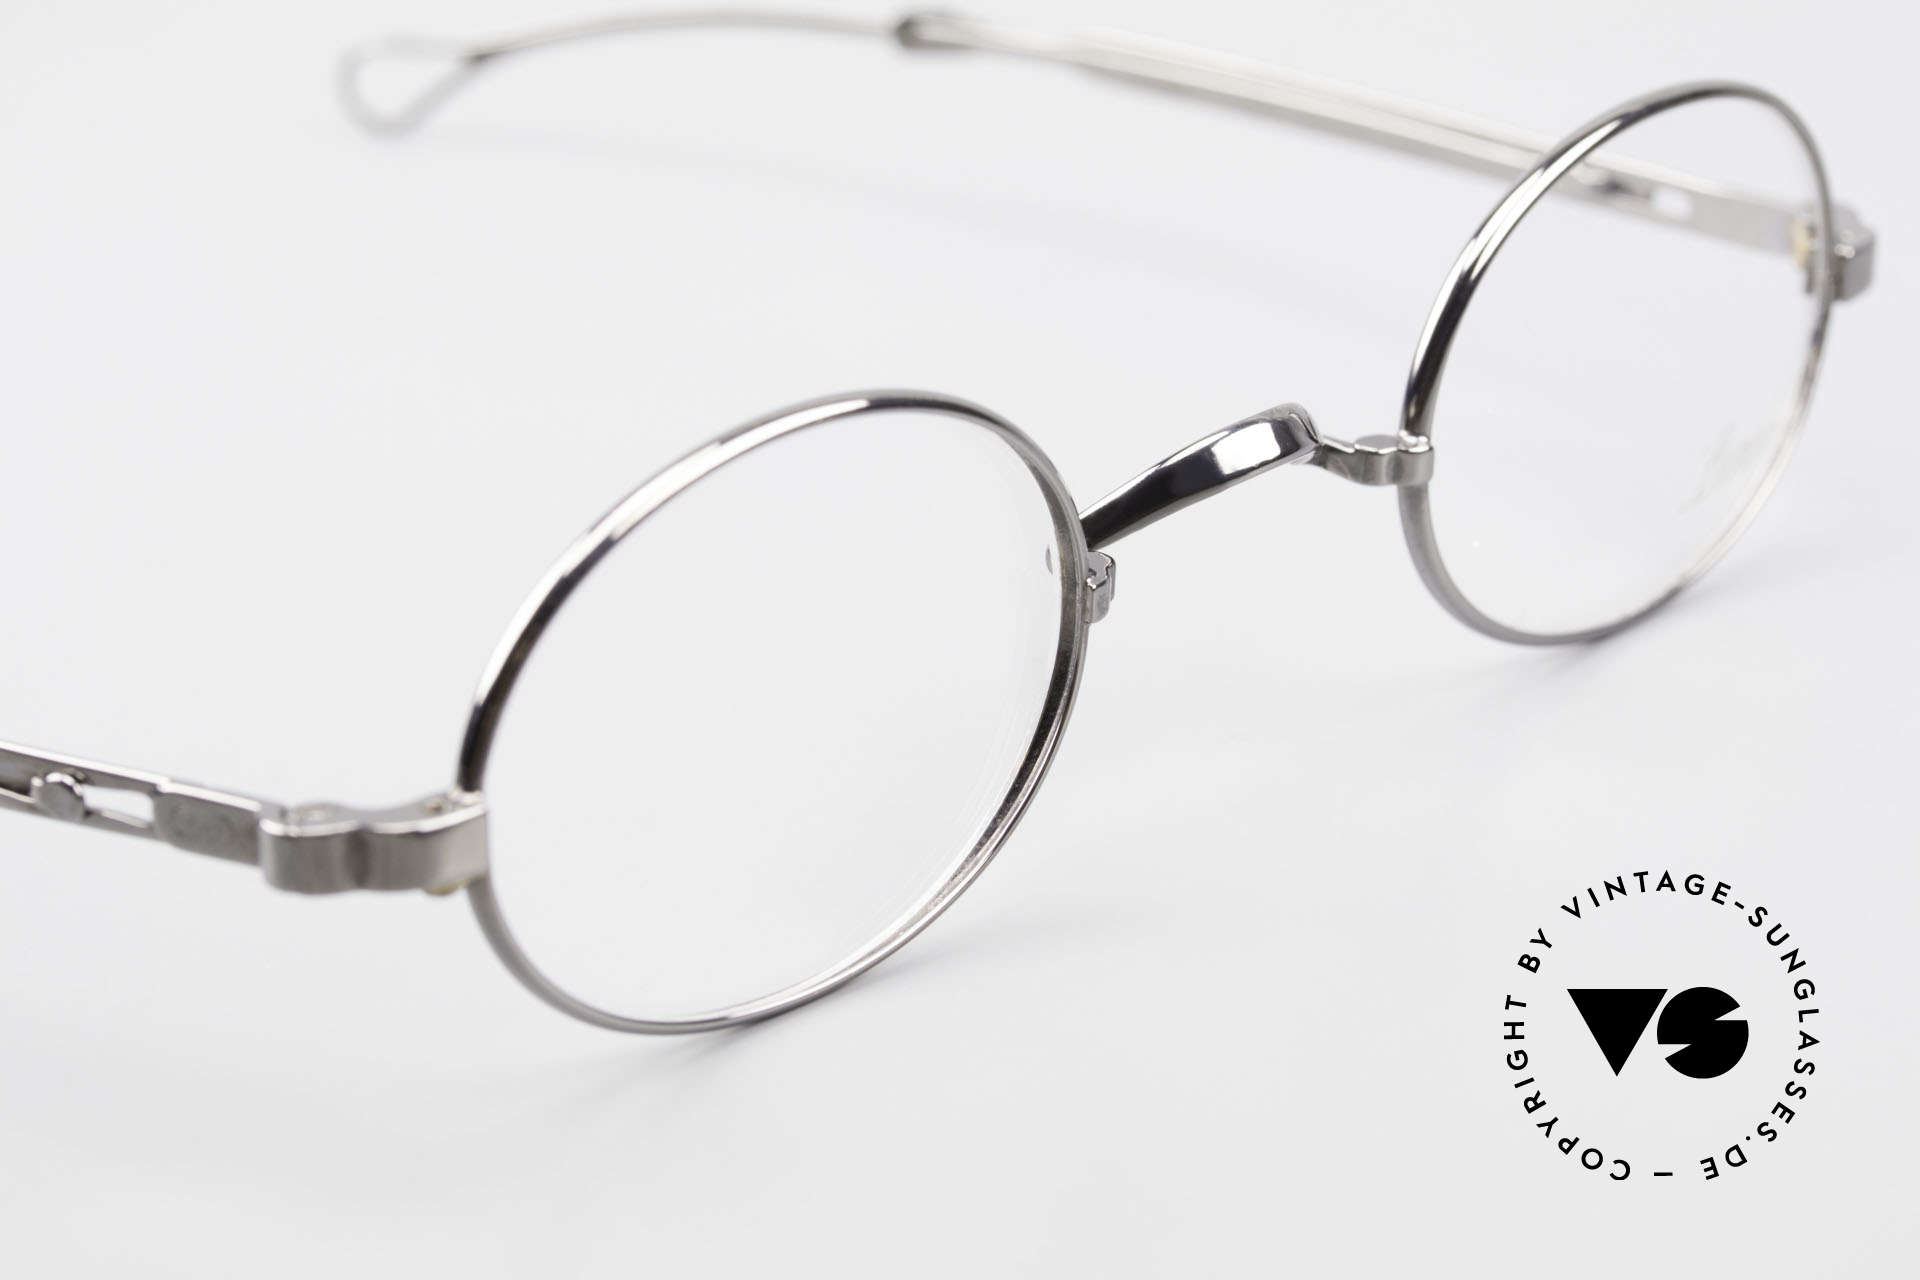 Lunor I 22 Telescopic Ovale Brille Schiebebügel, sowie für ausziehbare Brillenbügel (= teleskopartig), Passend für Herren und Damen